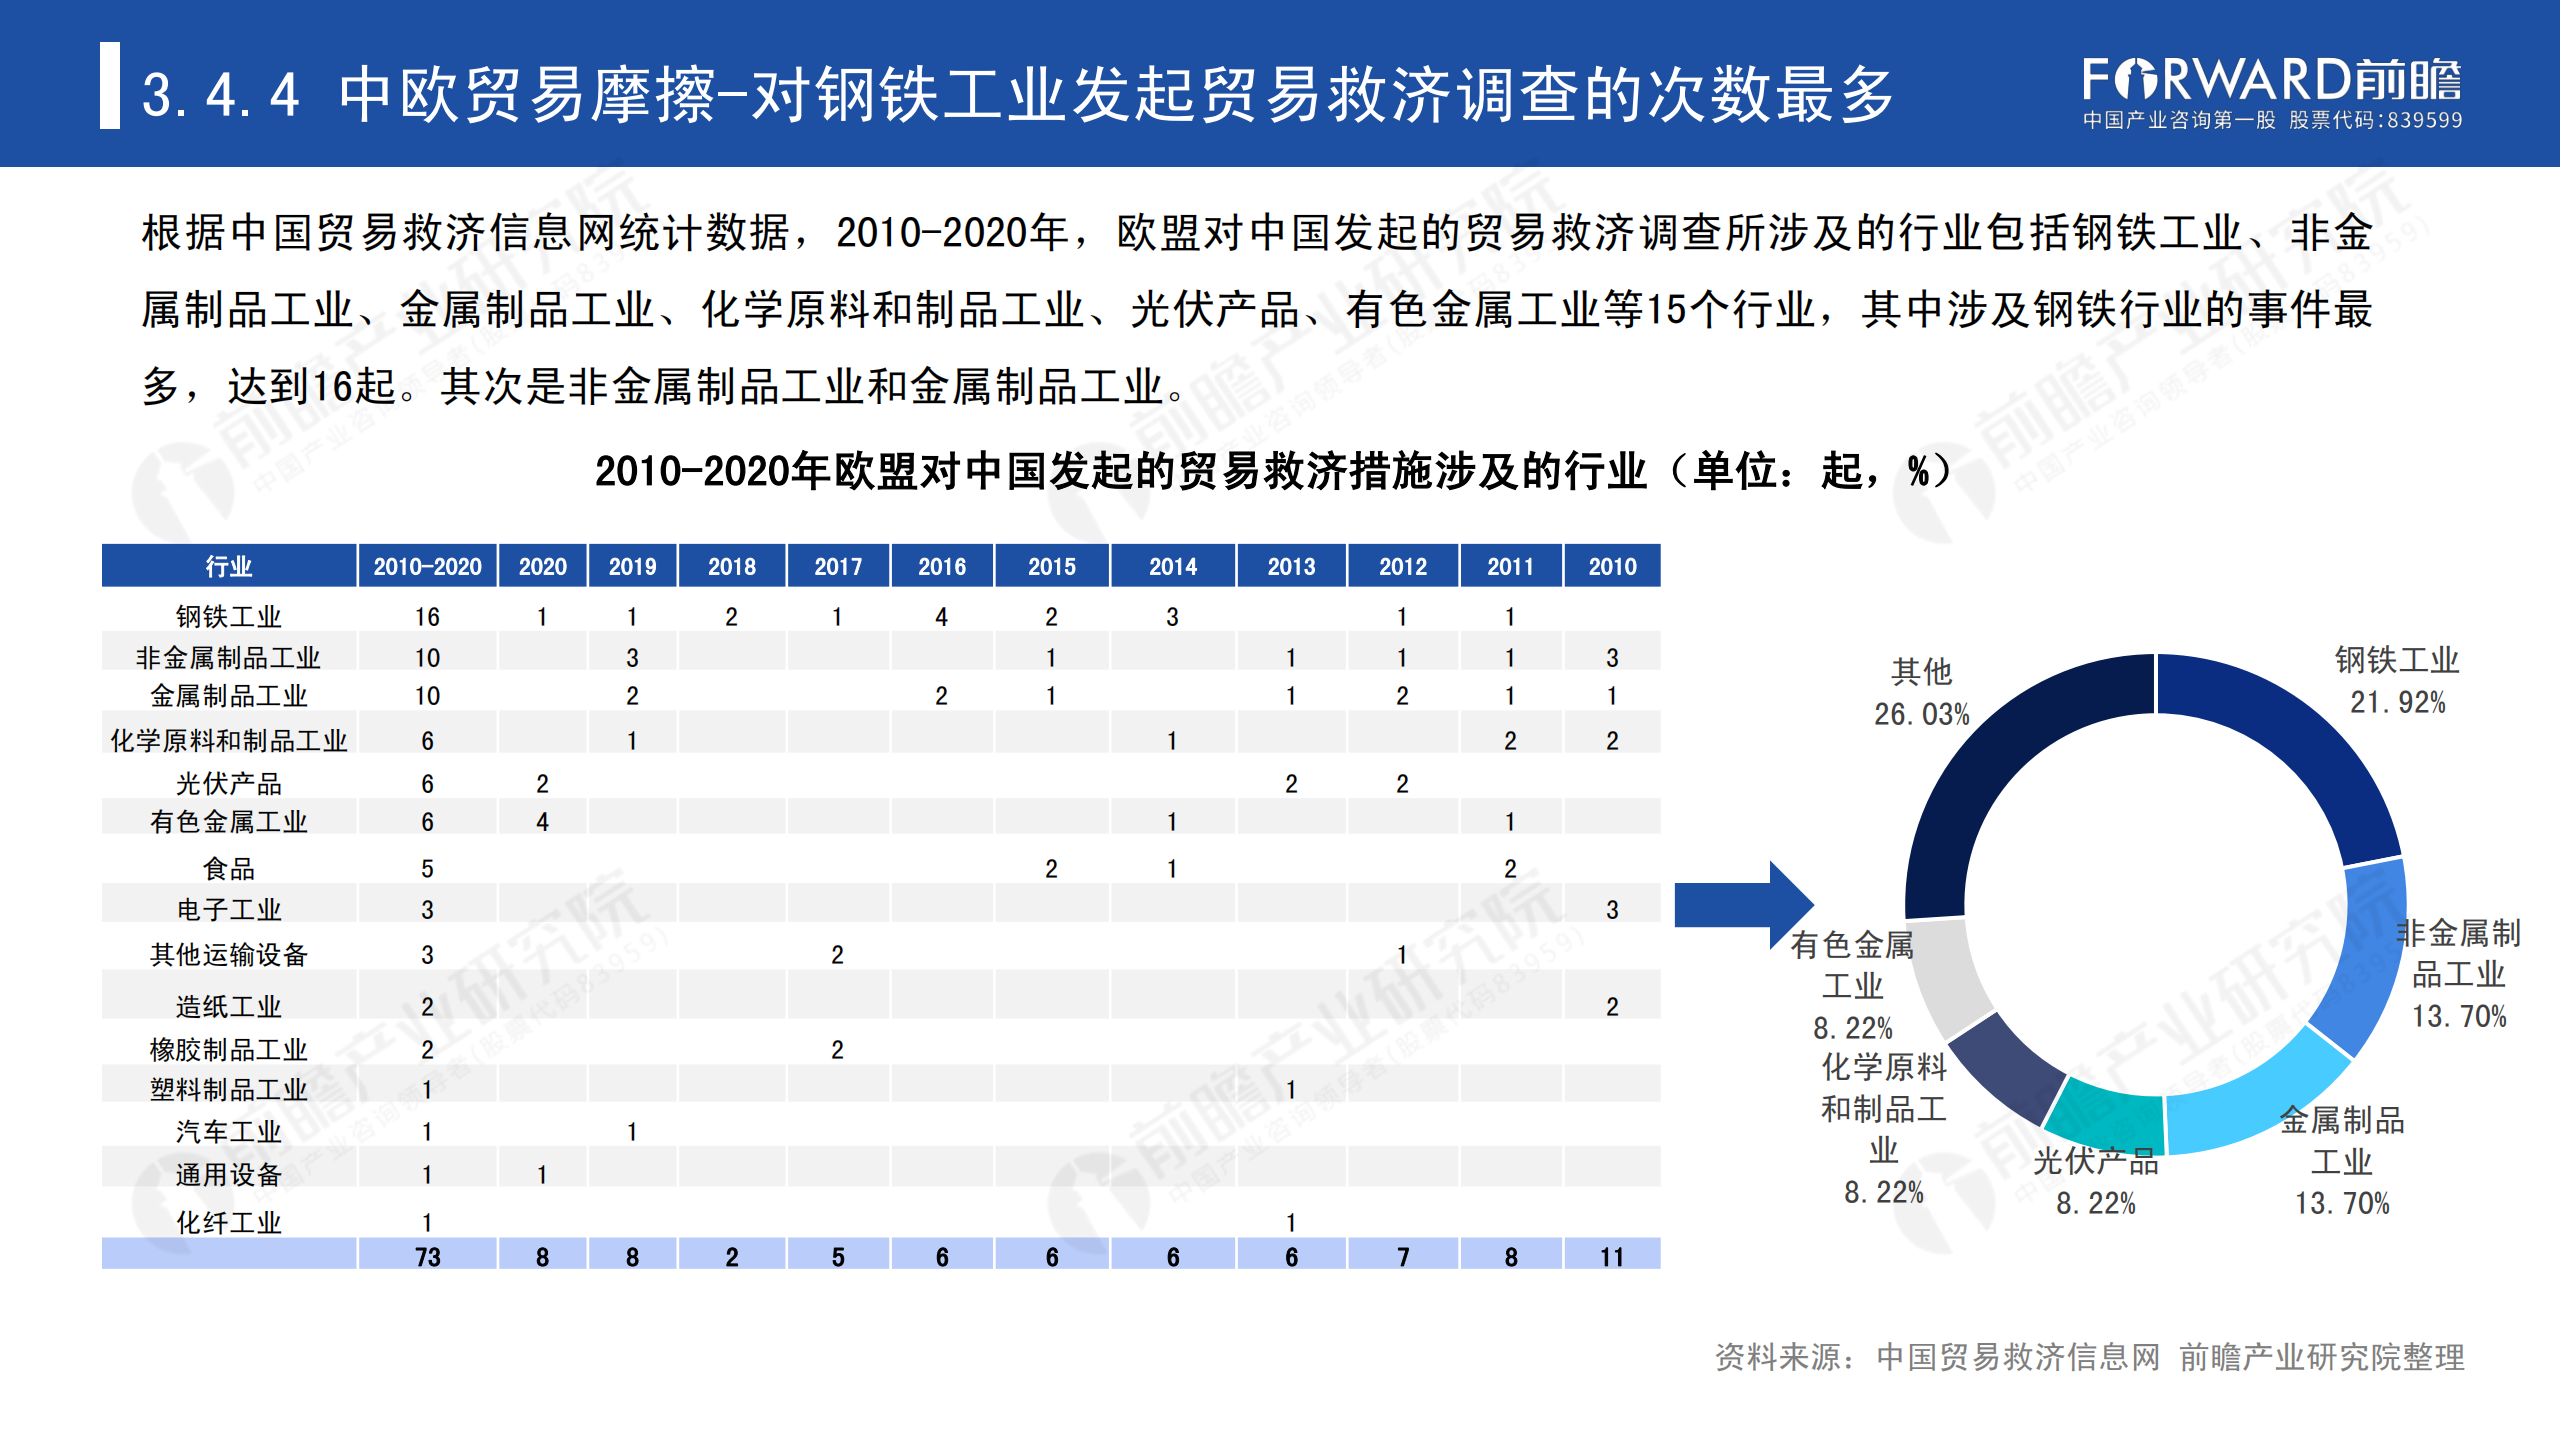 2020年中国贸易摩擦全景回顾-前瞻-2021-64页_55.png